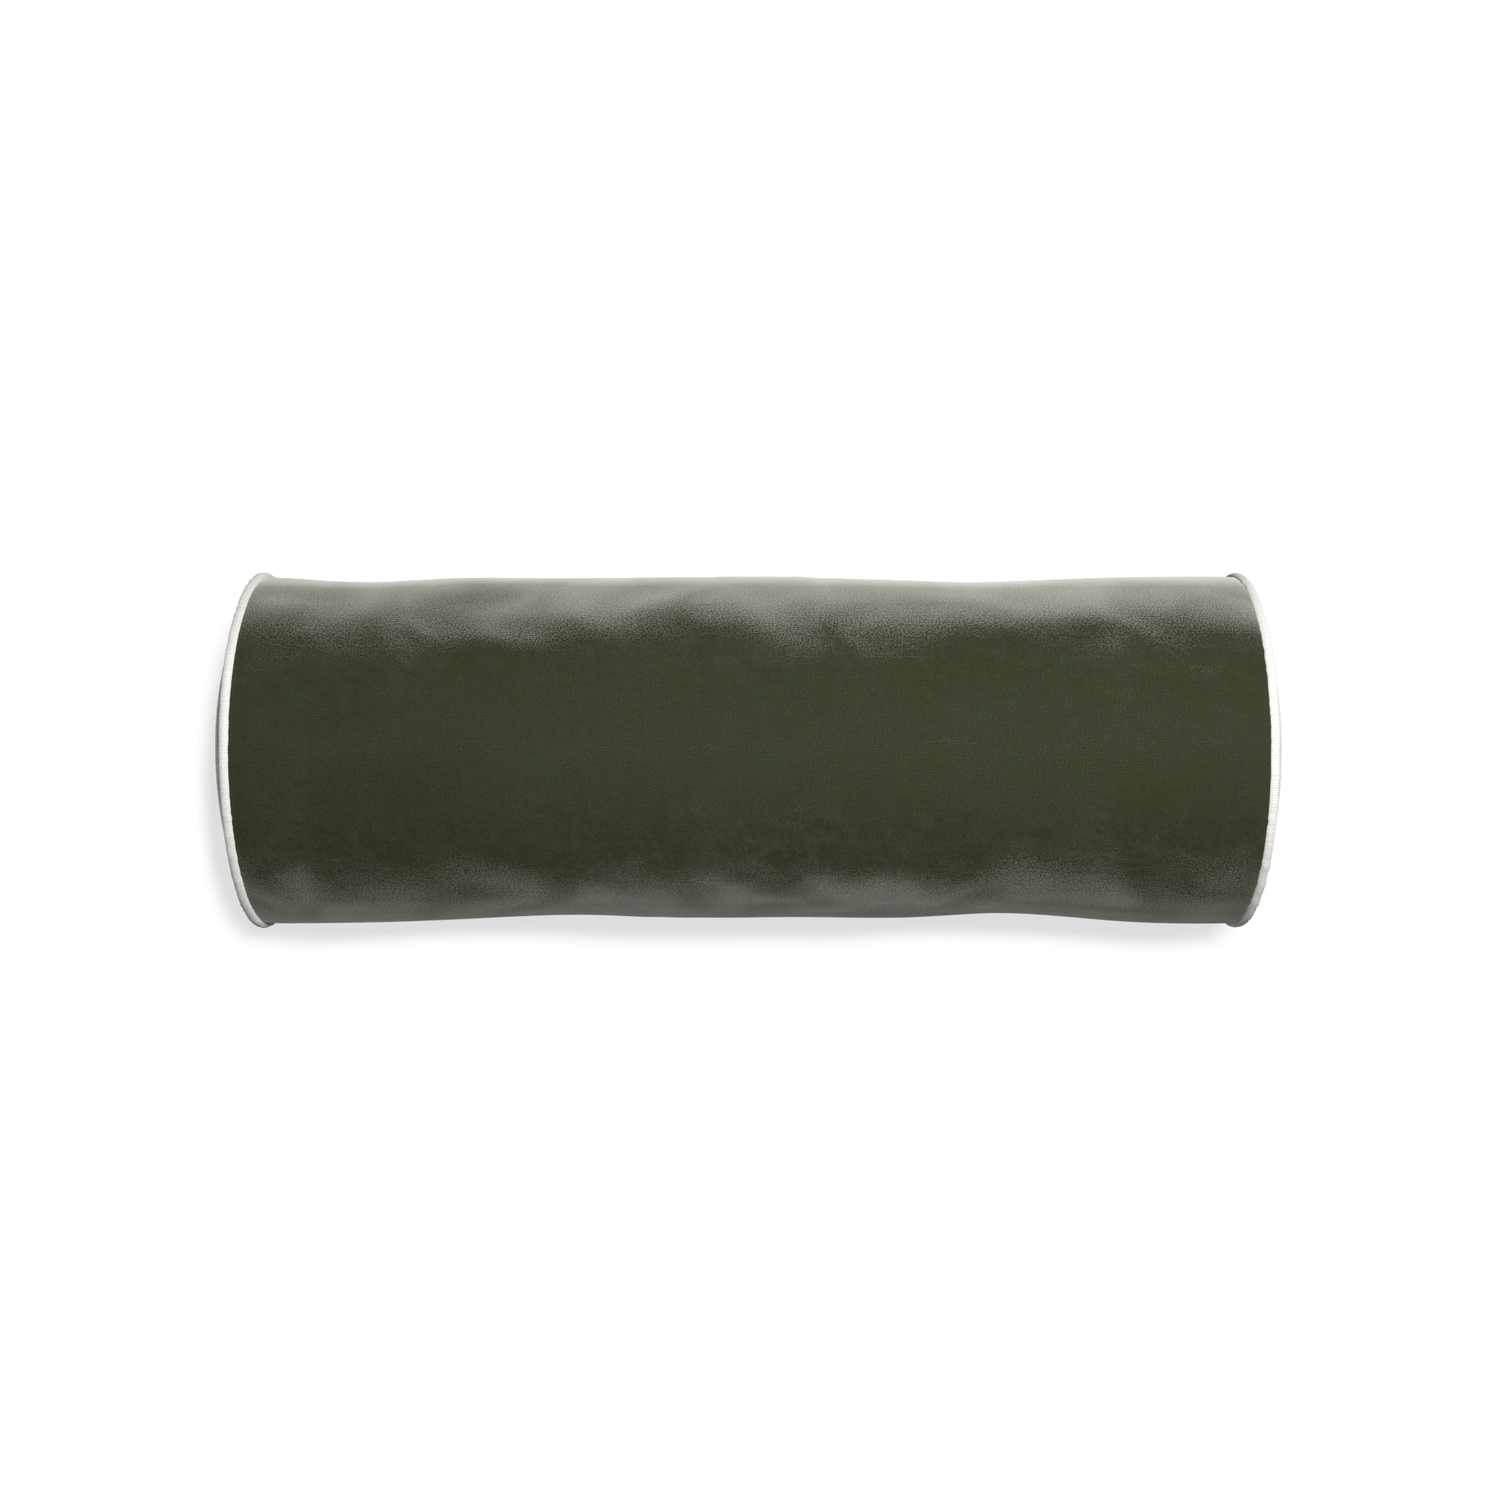 bolster fern green velvet pillow with white piping